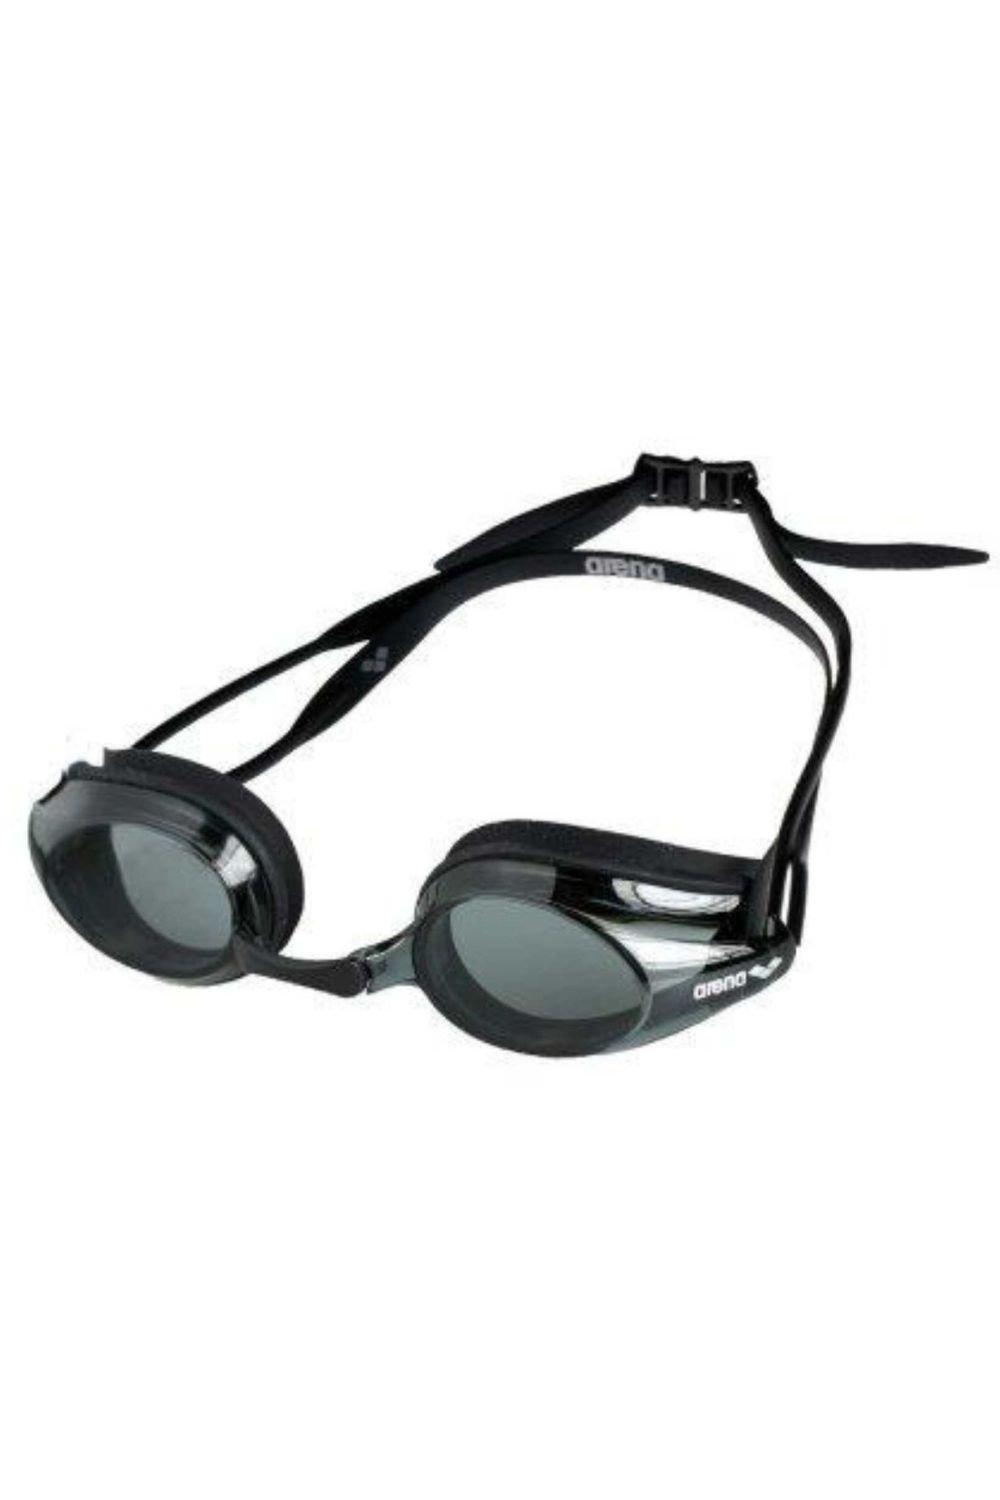 Очки для плавания Tracks - Дымчатая линза Arena, черный очки для плавания arena tracks розовые